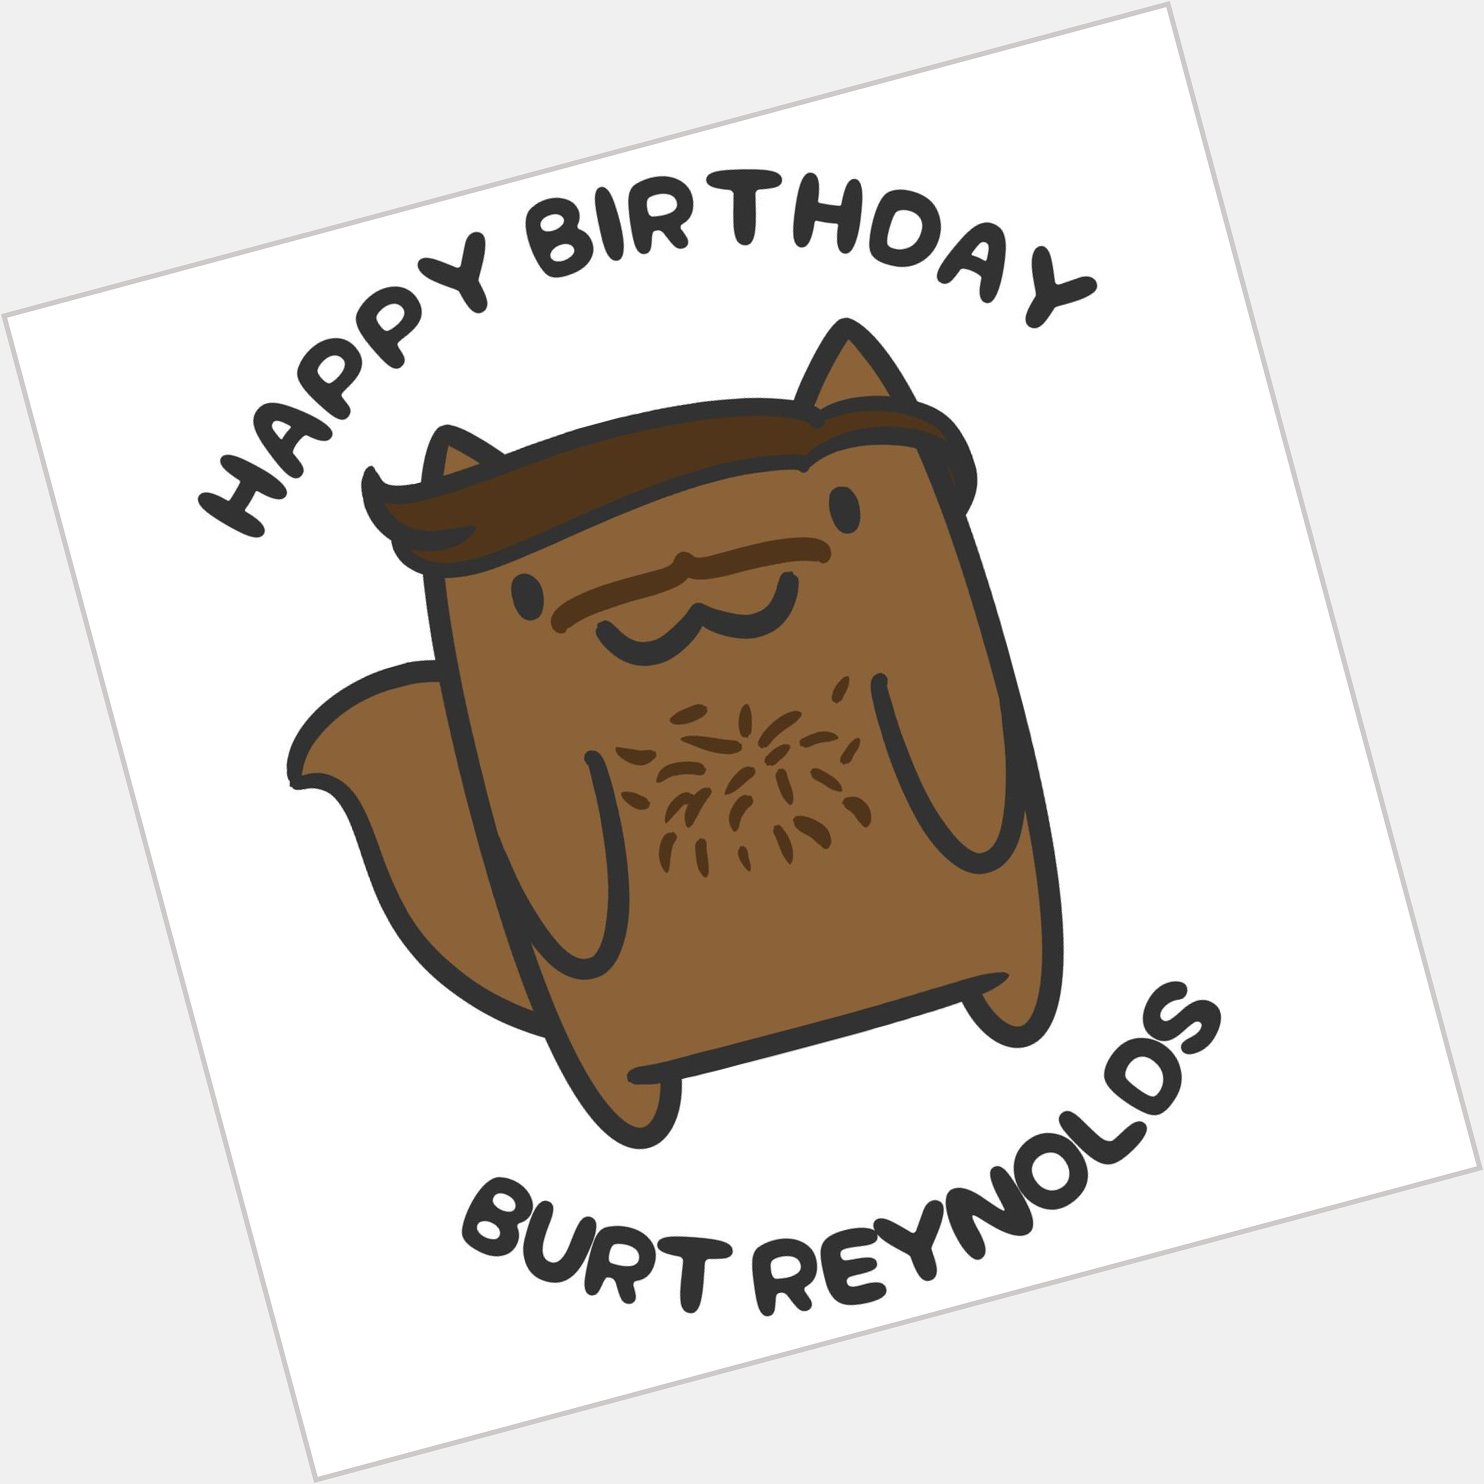 Happy Birthday Burt Reynolds!   